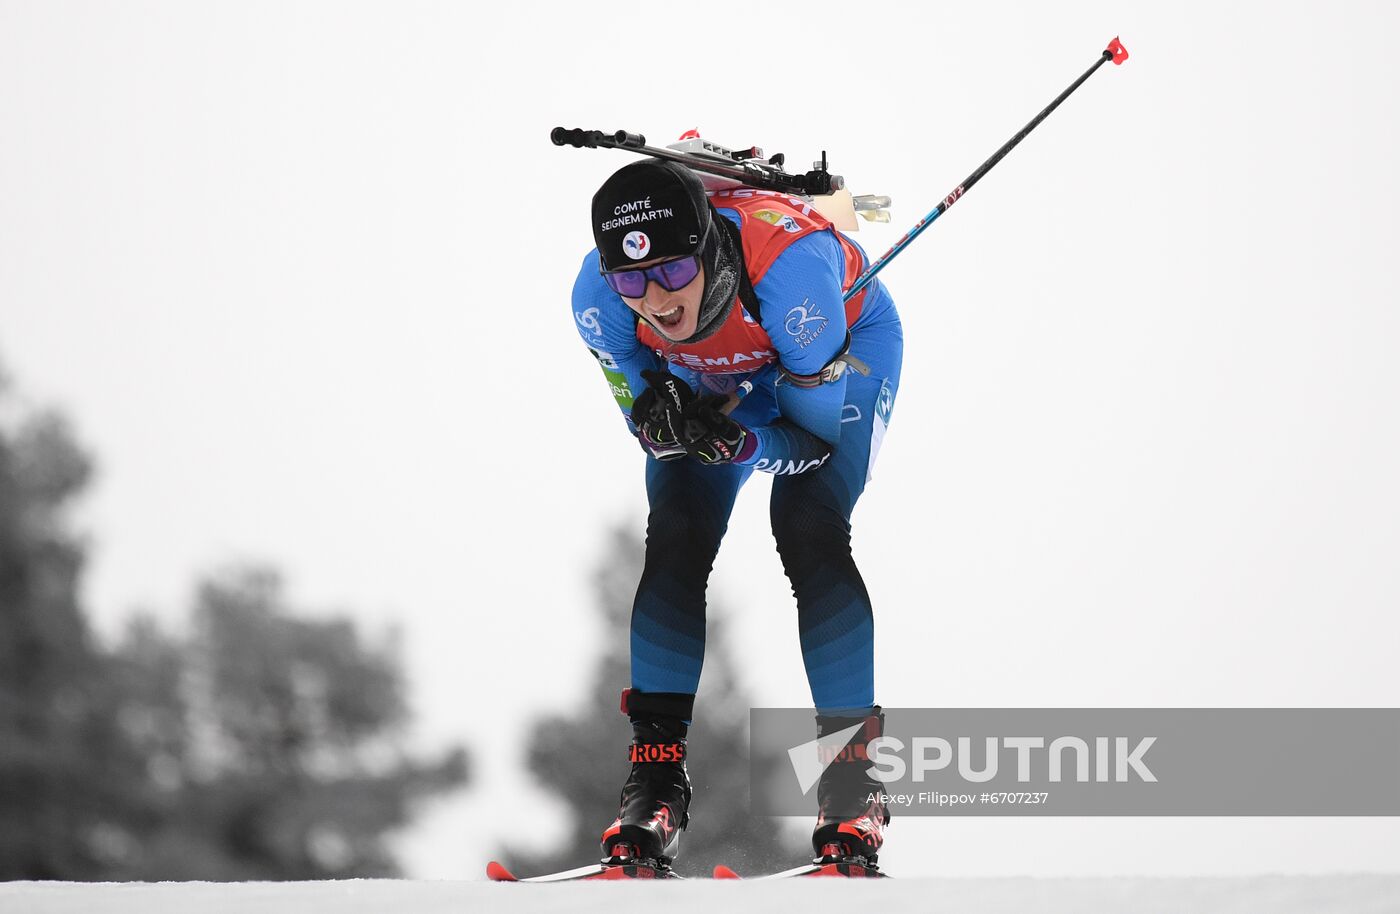 Sweden Biathlon World Cup Women